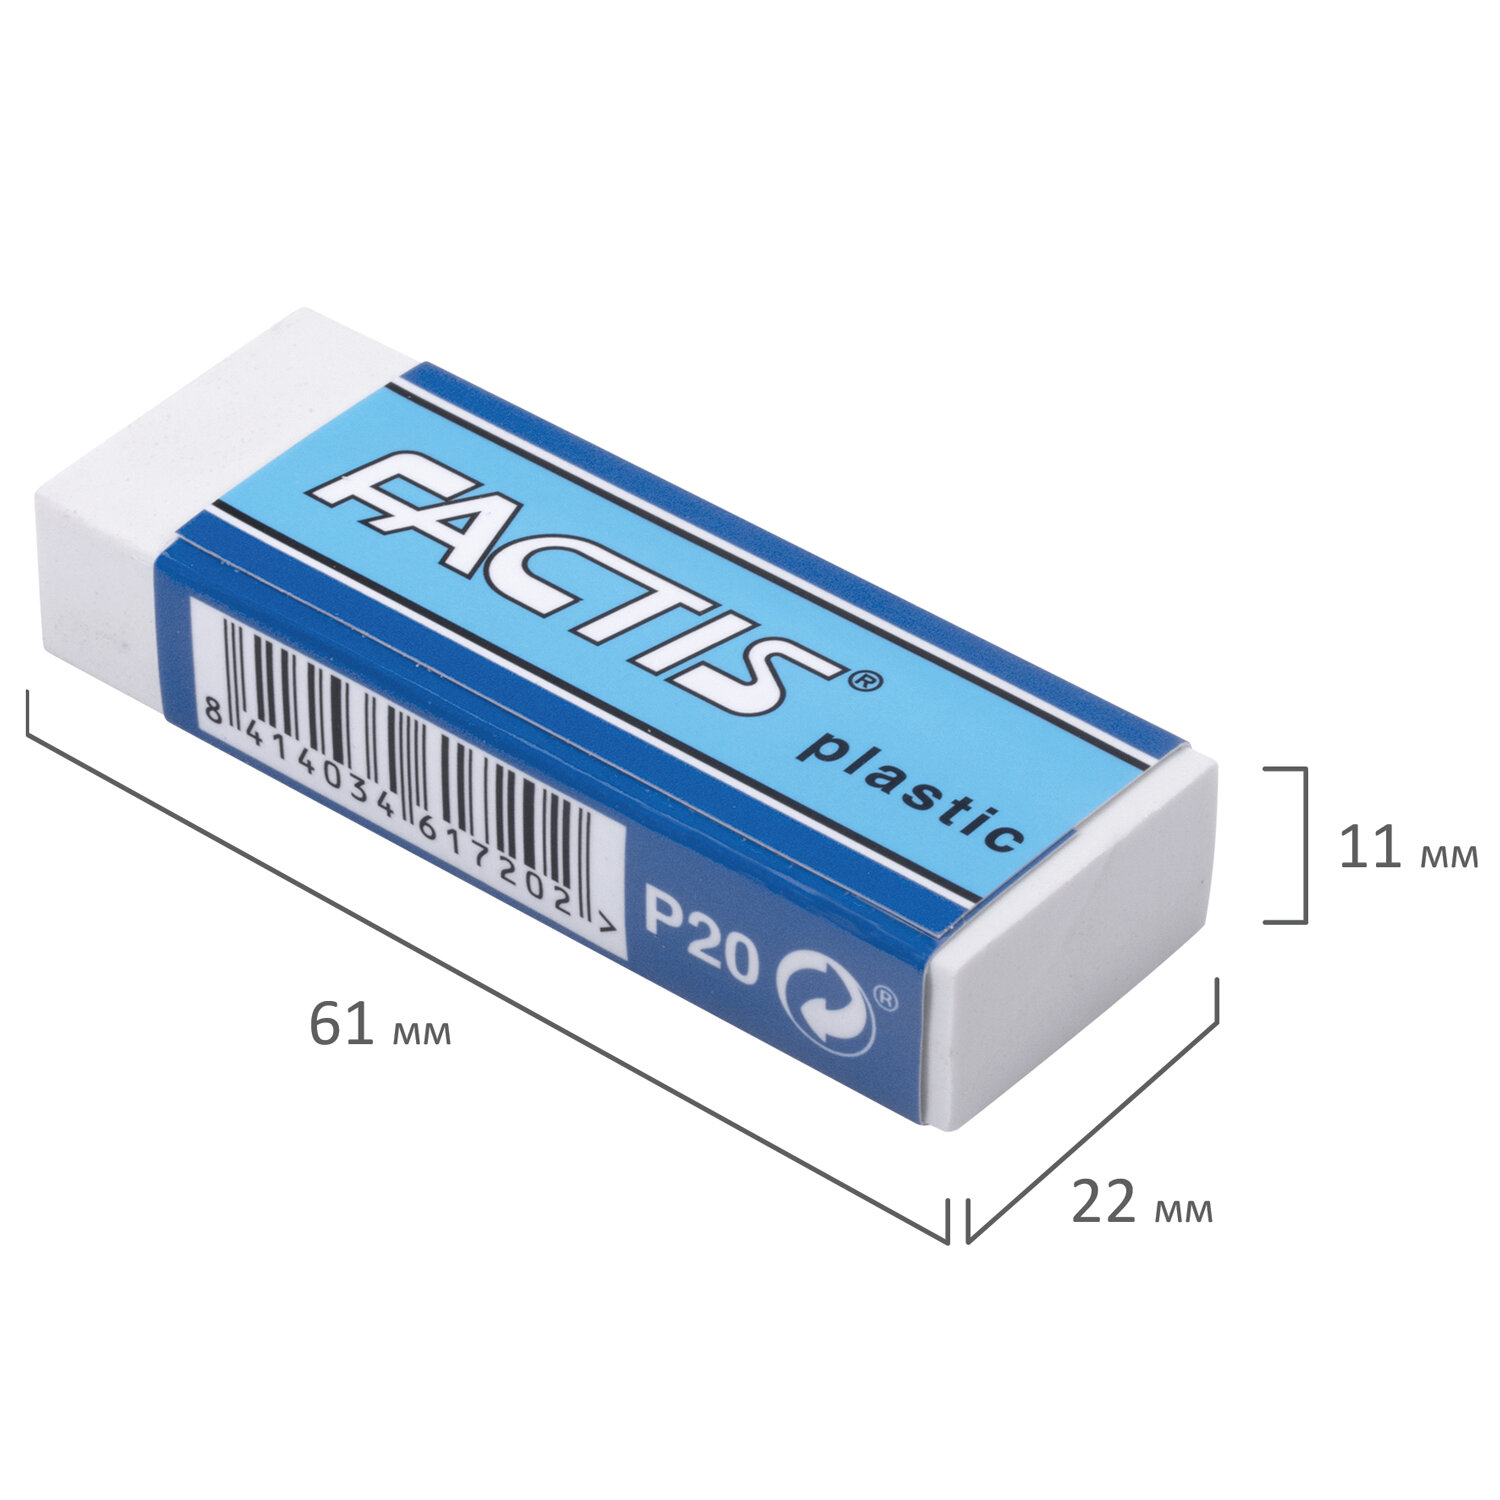 Ластик большой FACTIS Plastic P 20 (Испания), 61х22х11мм, белый, прямоугольный, мягкий, CPFP20